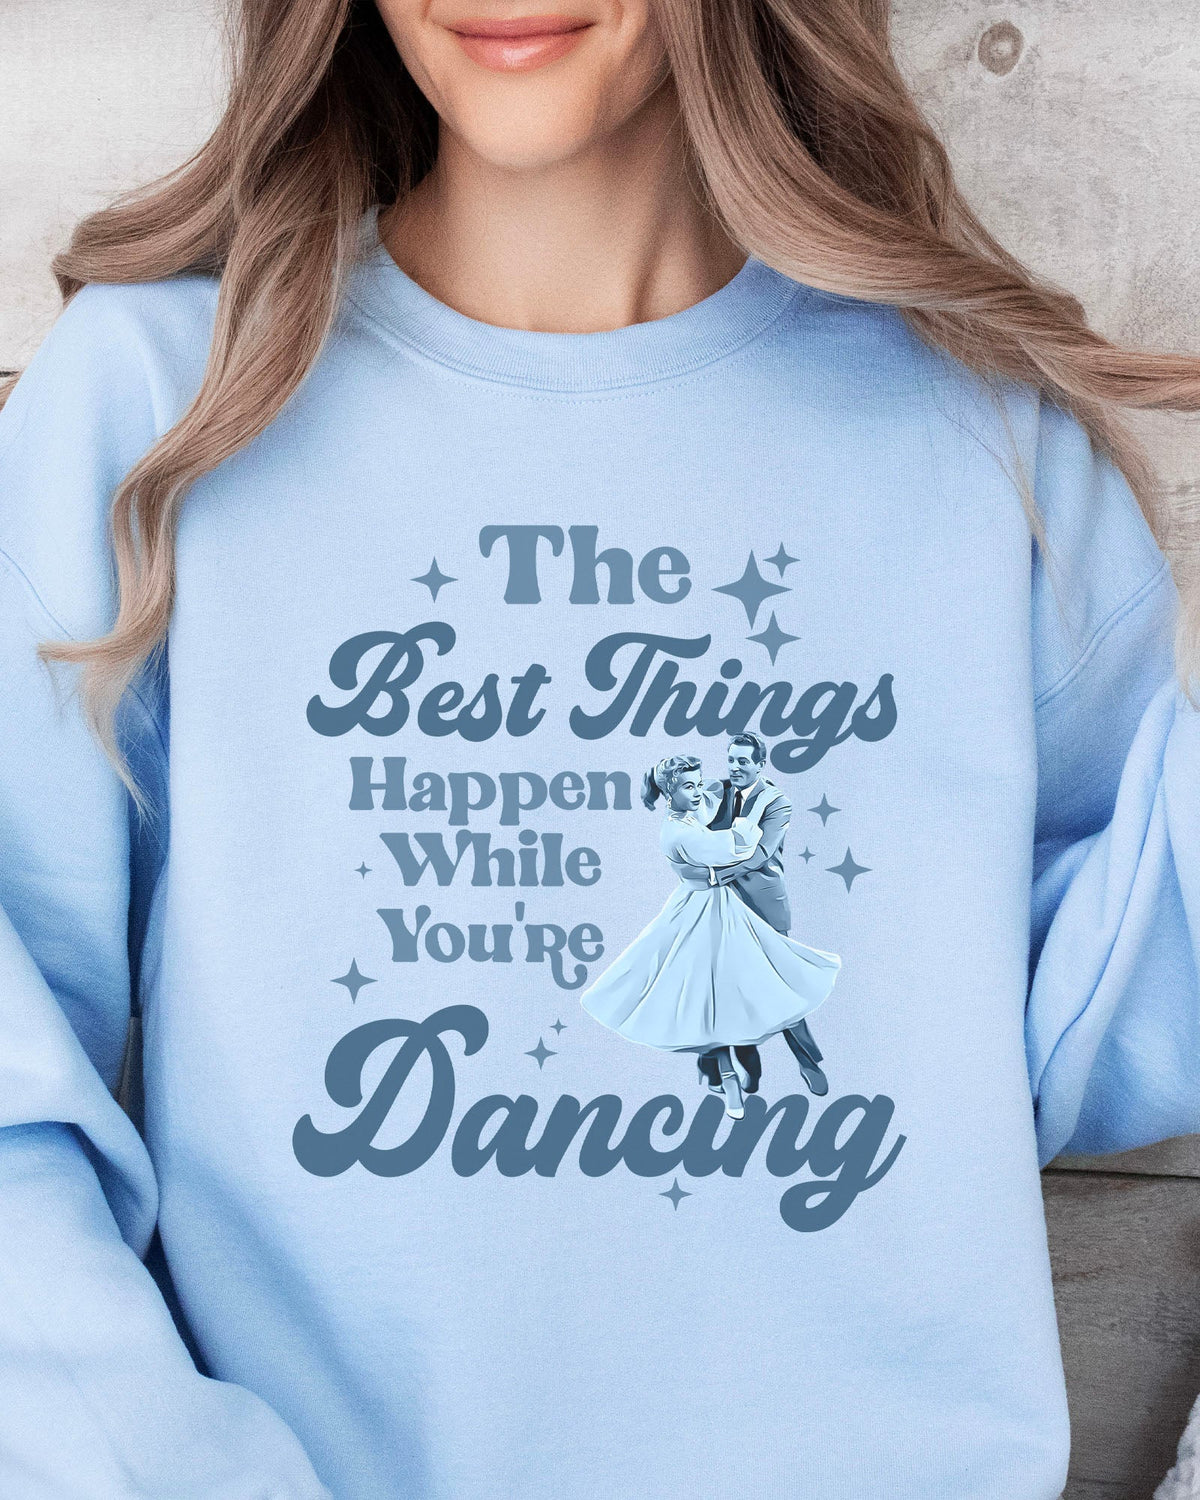 While You're Dancing Sweatshirt